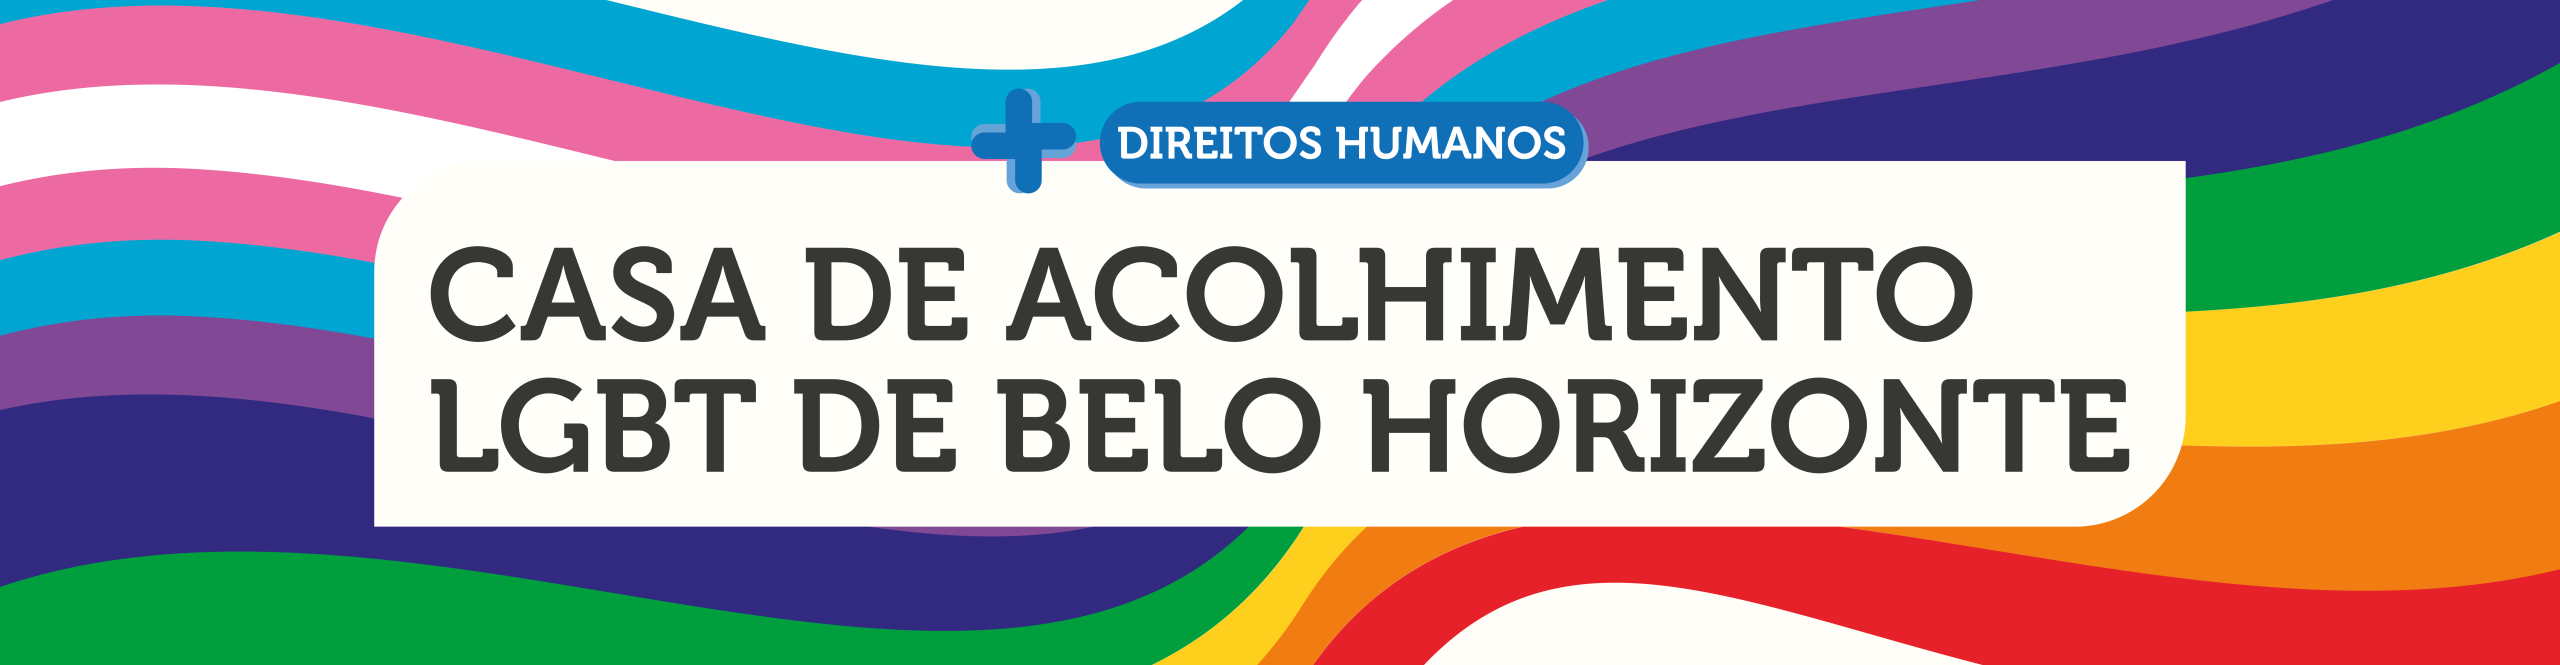 mais Direitos Humanos Casa de Acolhimento LGBT de Belo Horizonte